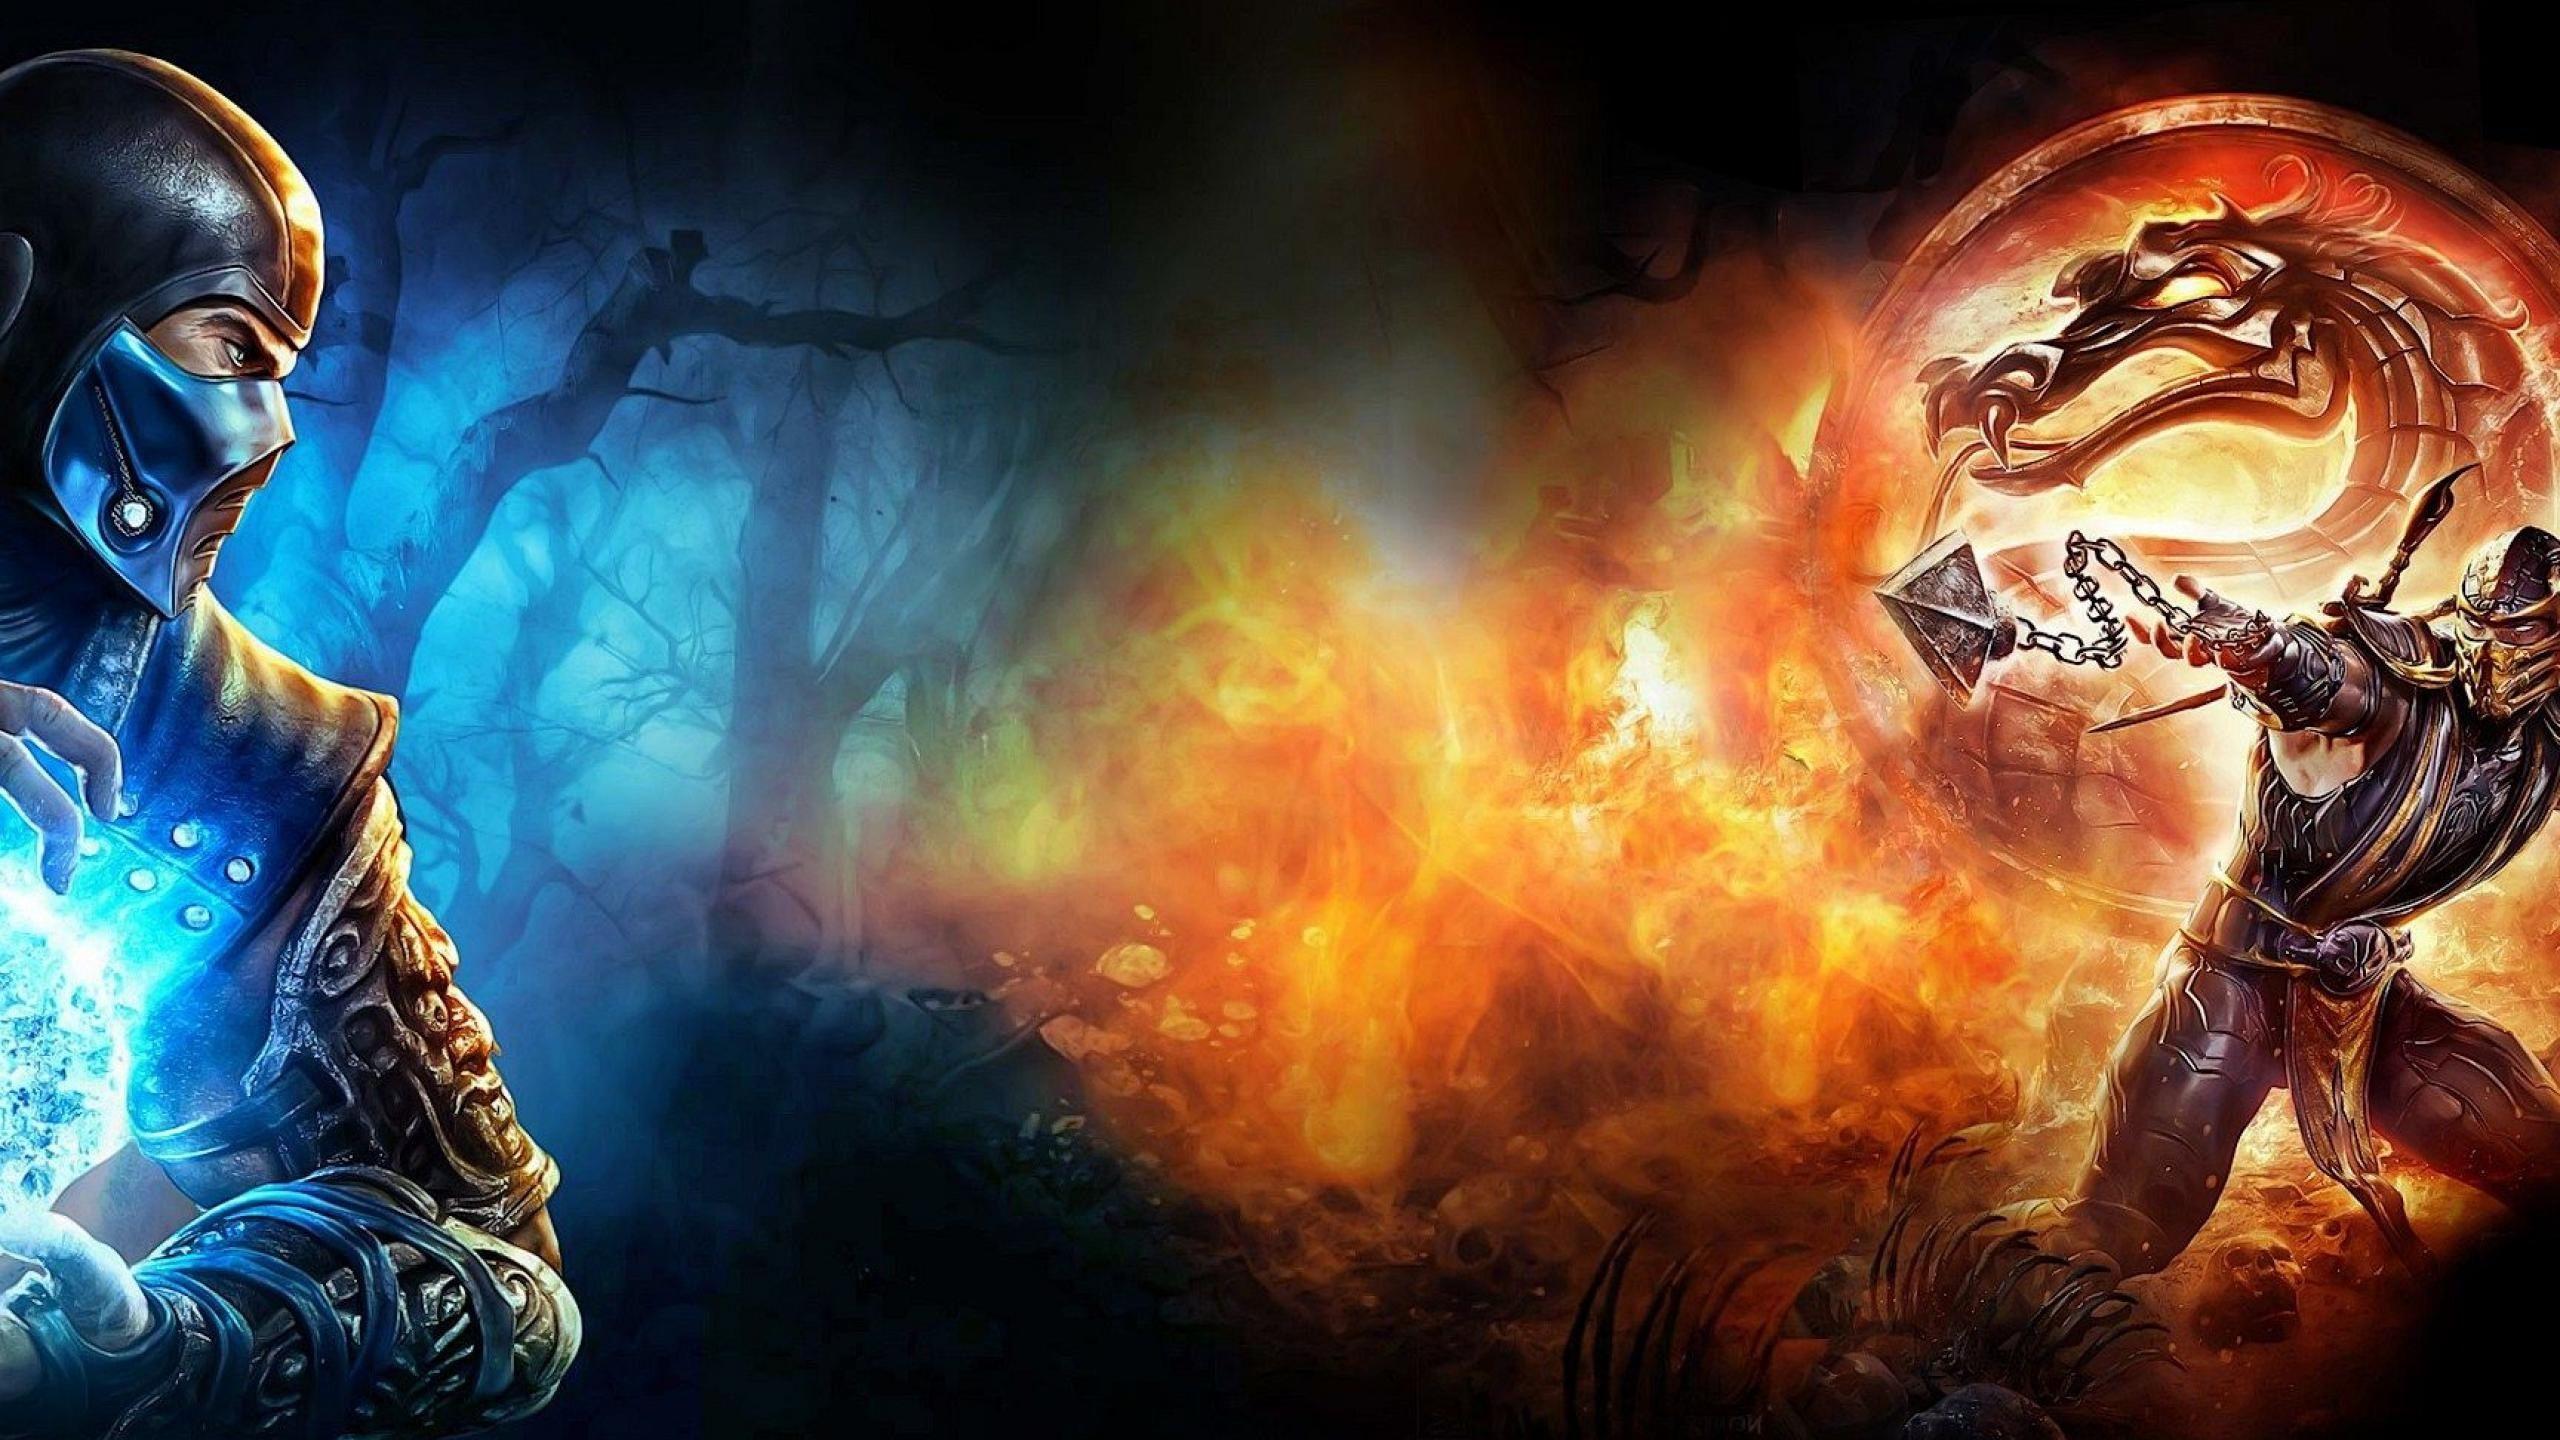 Games Subzero Mortal Kombat Wallpaper 2560x1440PX